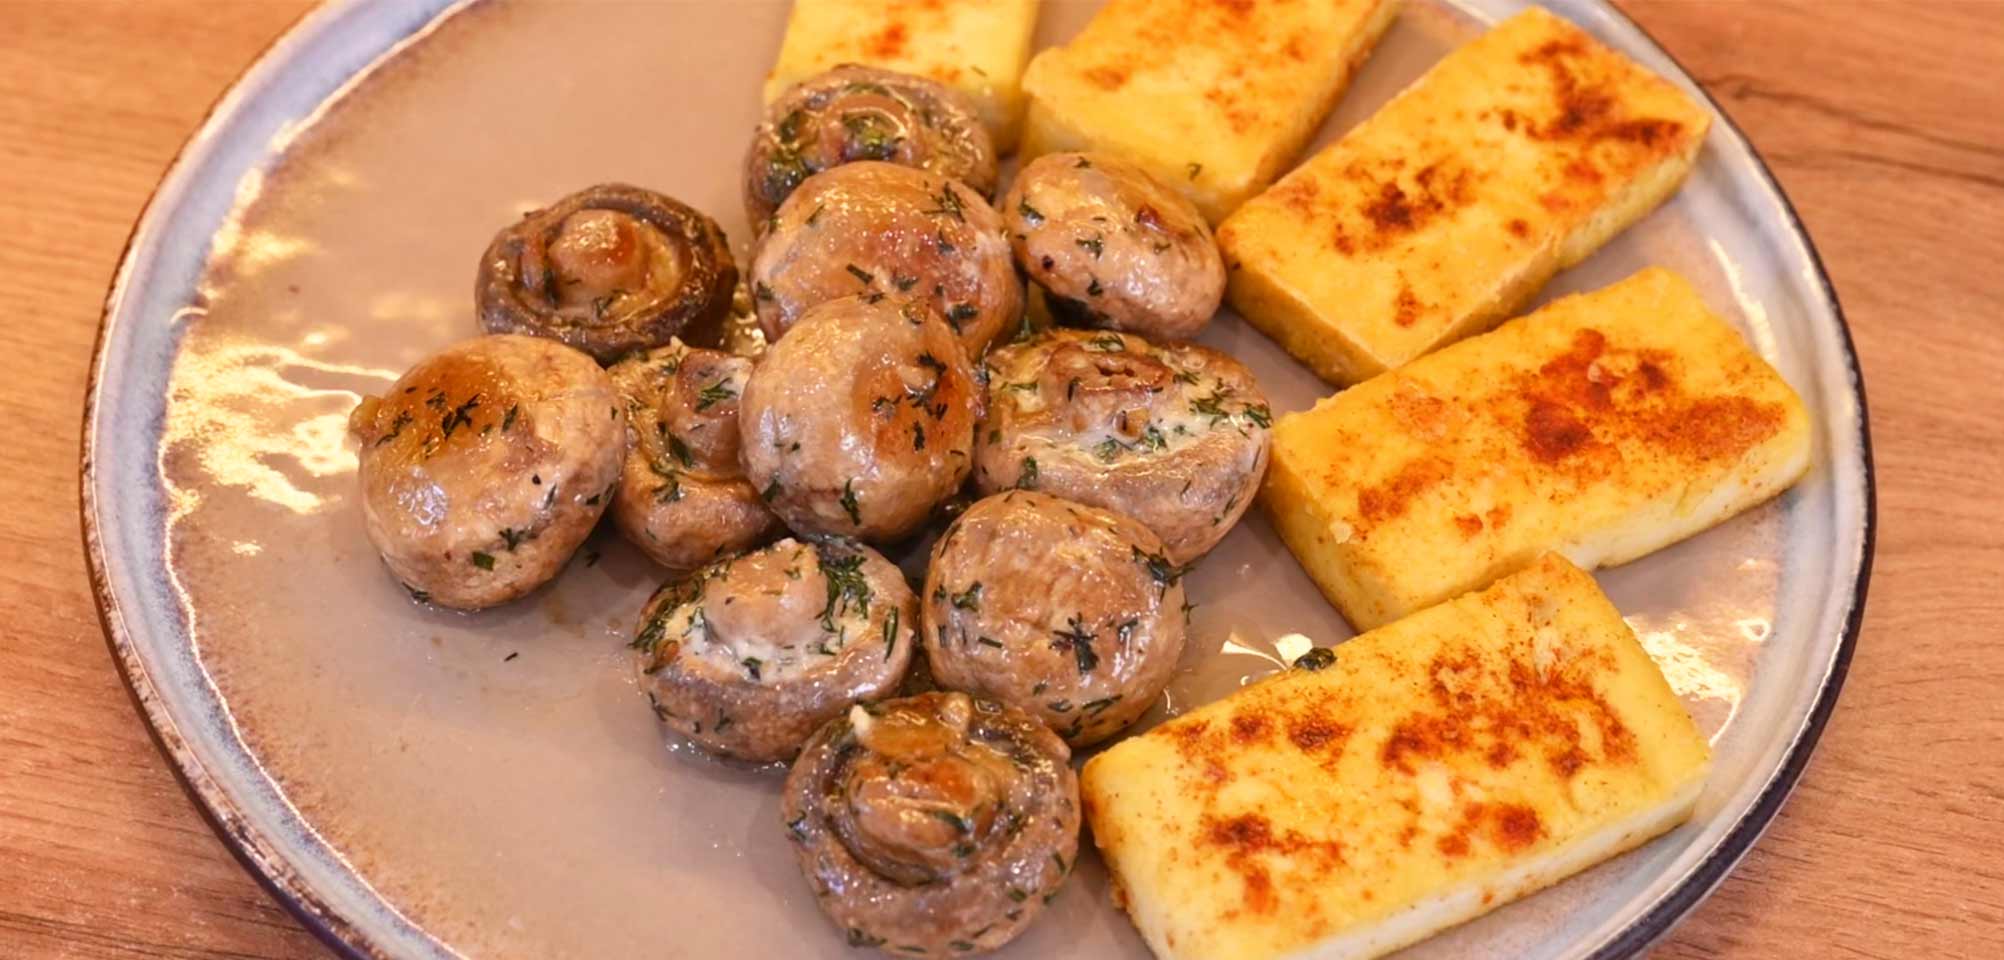 По-осеннему вкусно: топ-5 рецептов блюд с грибами